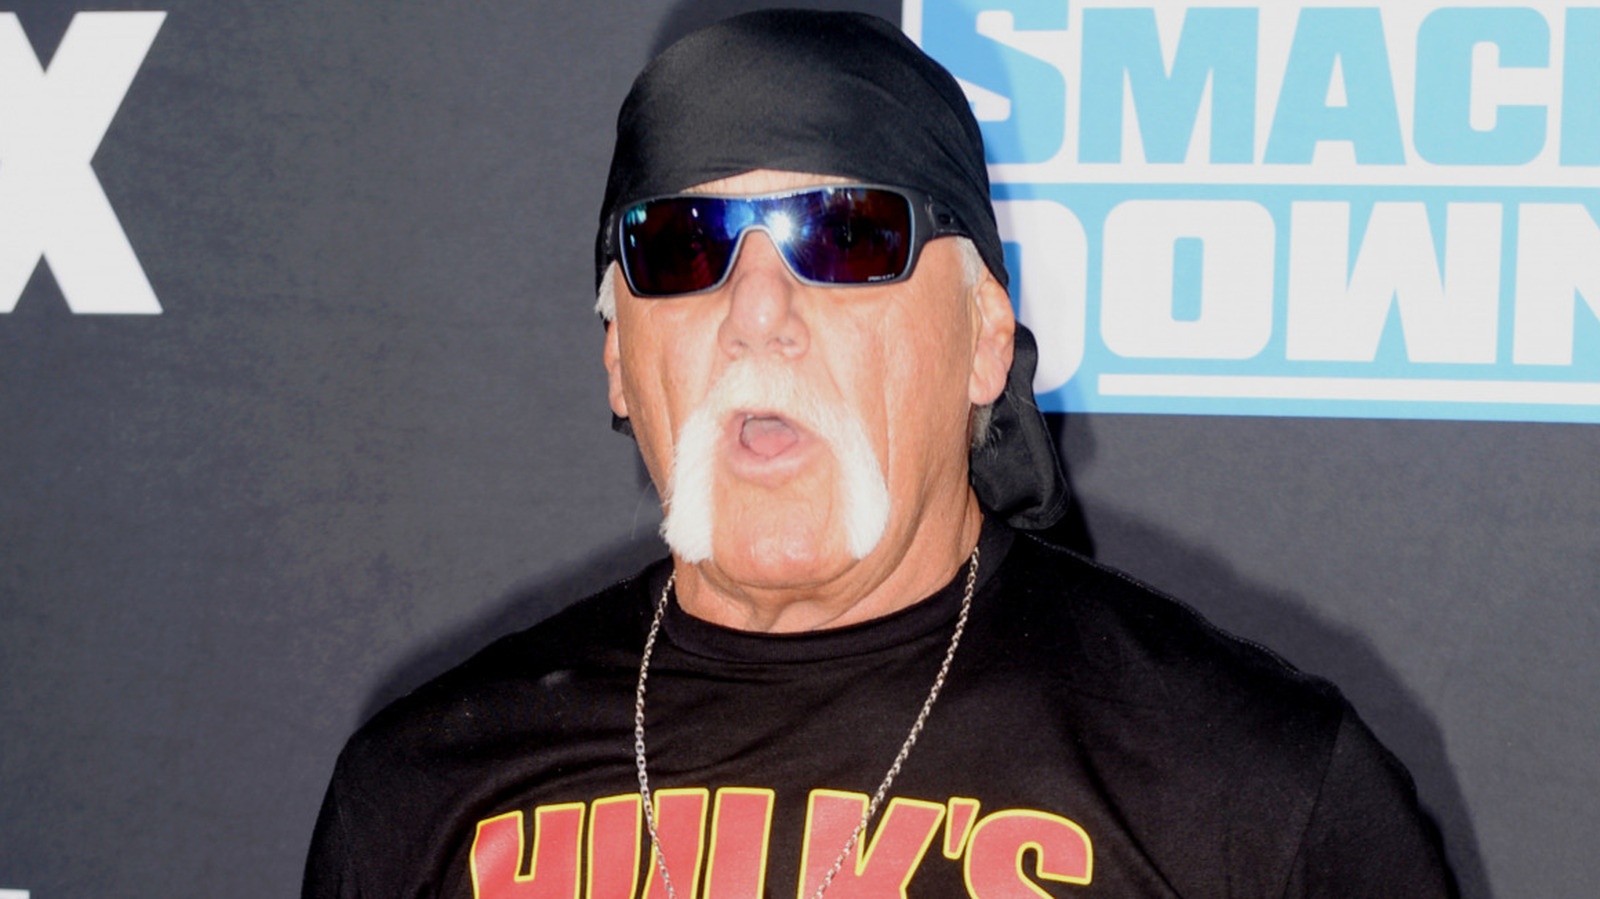 La actualización detrás del escenario arroja dudas sobre el reclamo de WrestleMania 39 de Hulk Hogan